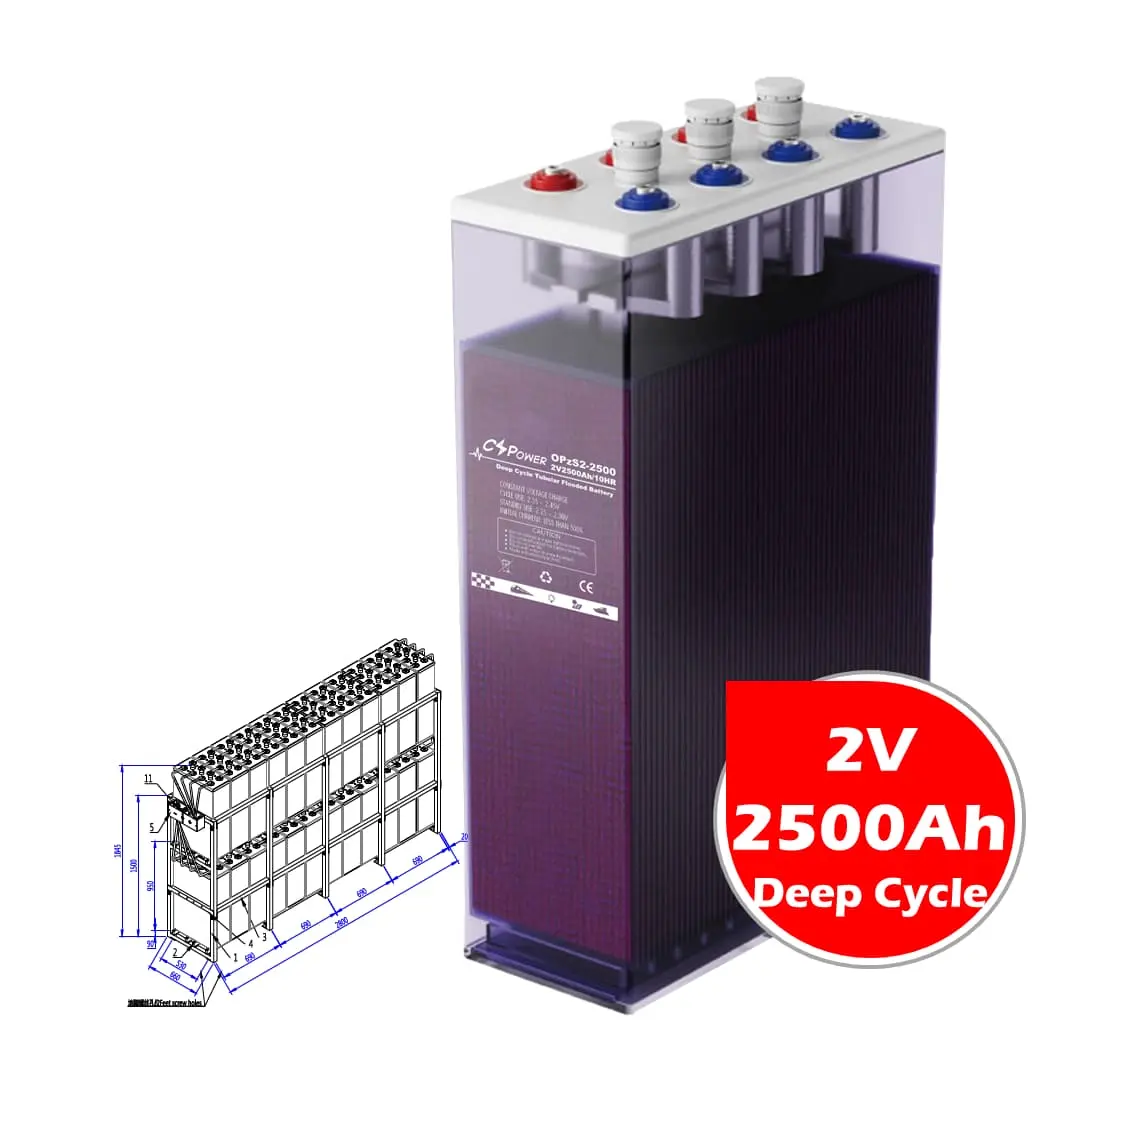 CSPower 2V 2500Ah Batterie OPzS tubulaire haute température pour onduleur solaire Chine usine OPzV2-2500 24OPzS2500 VS Leoch RIT